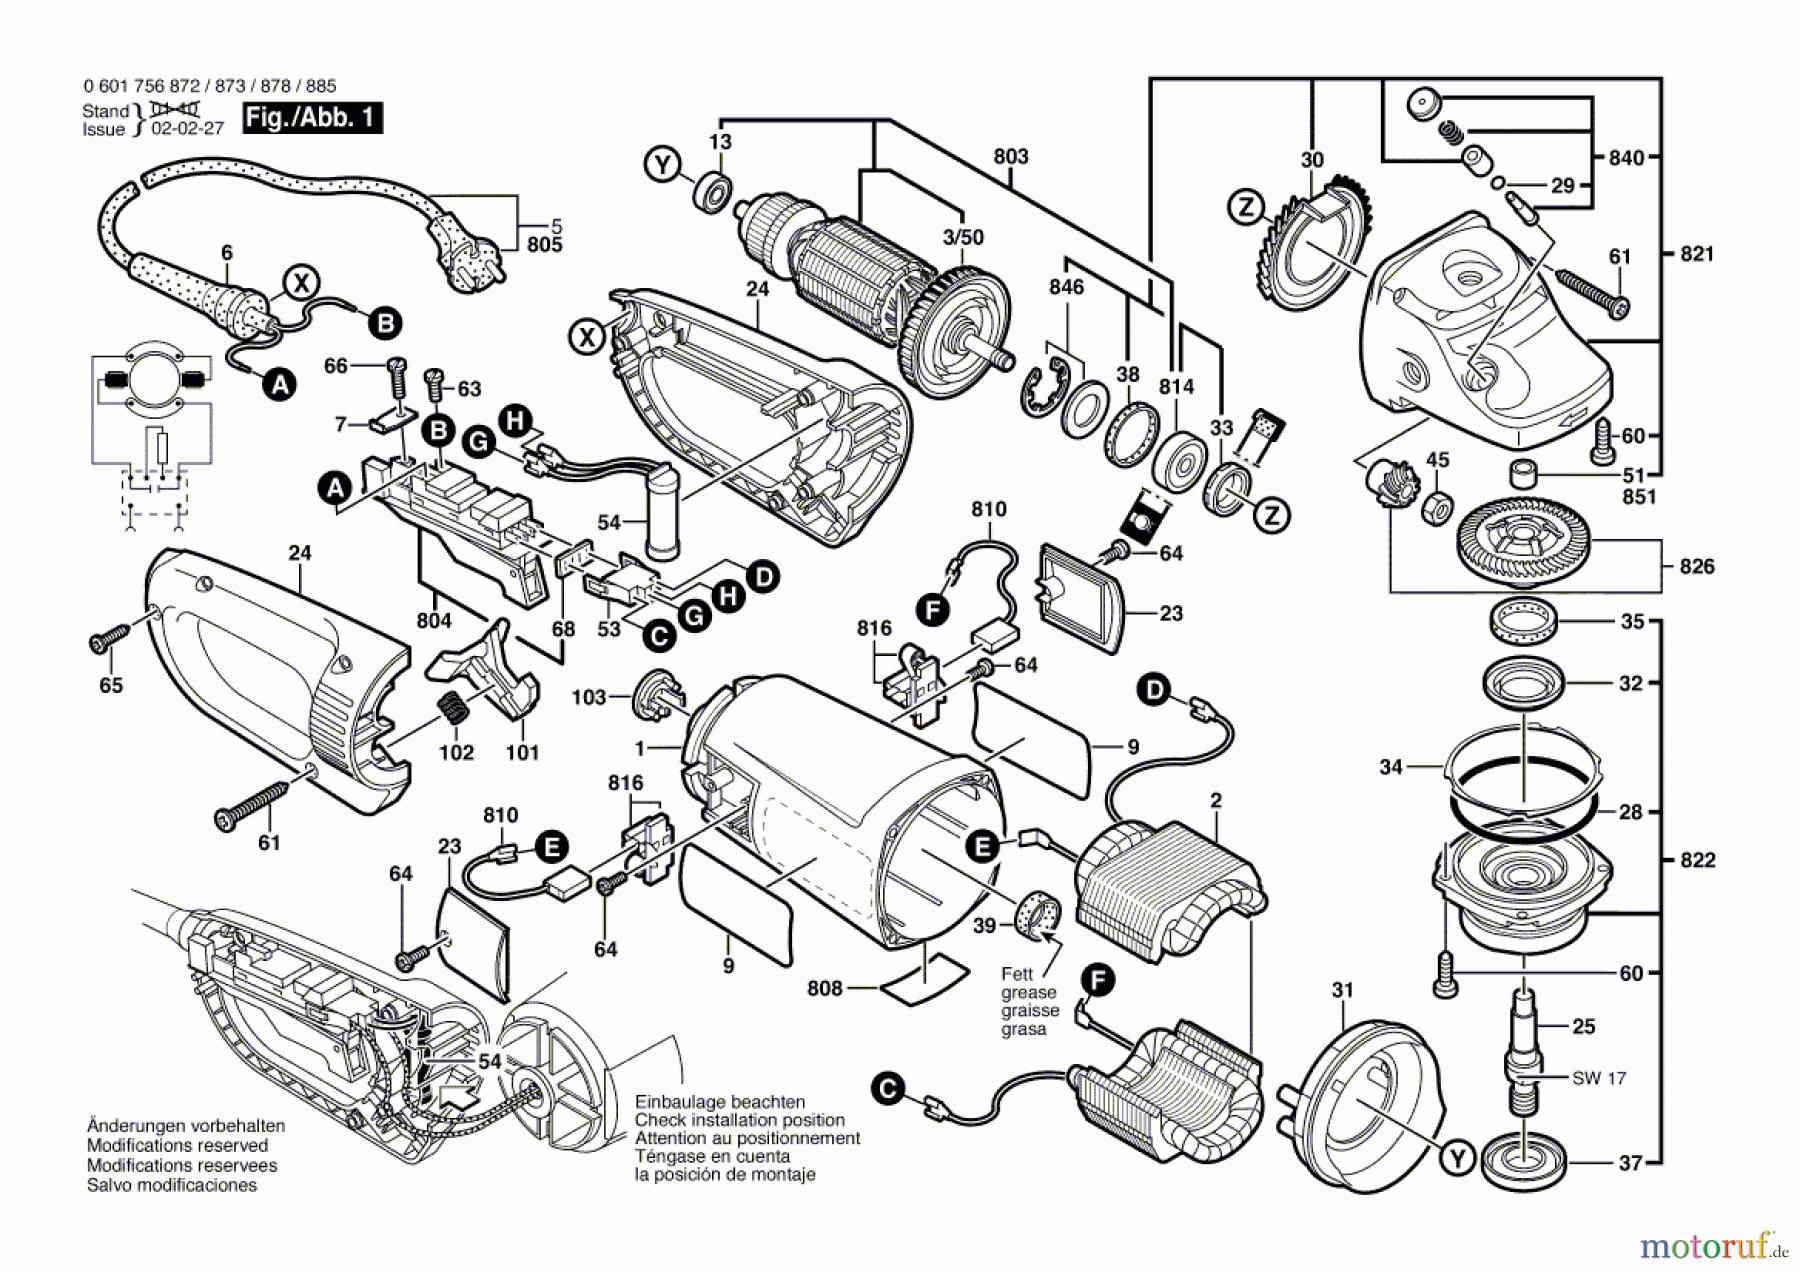  Bosch Werkzeug Winkelschleifer GWS 25-230 J Seite 1